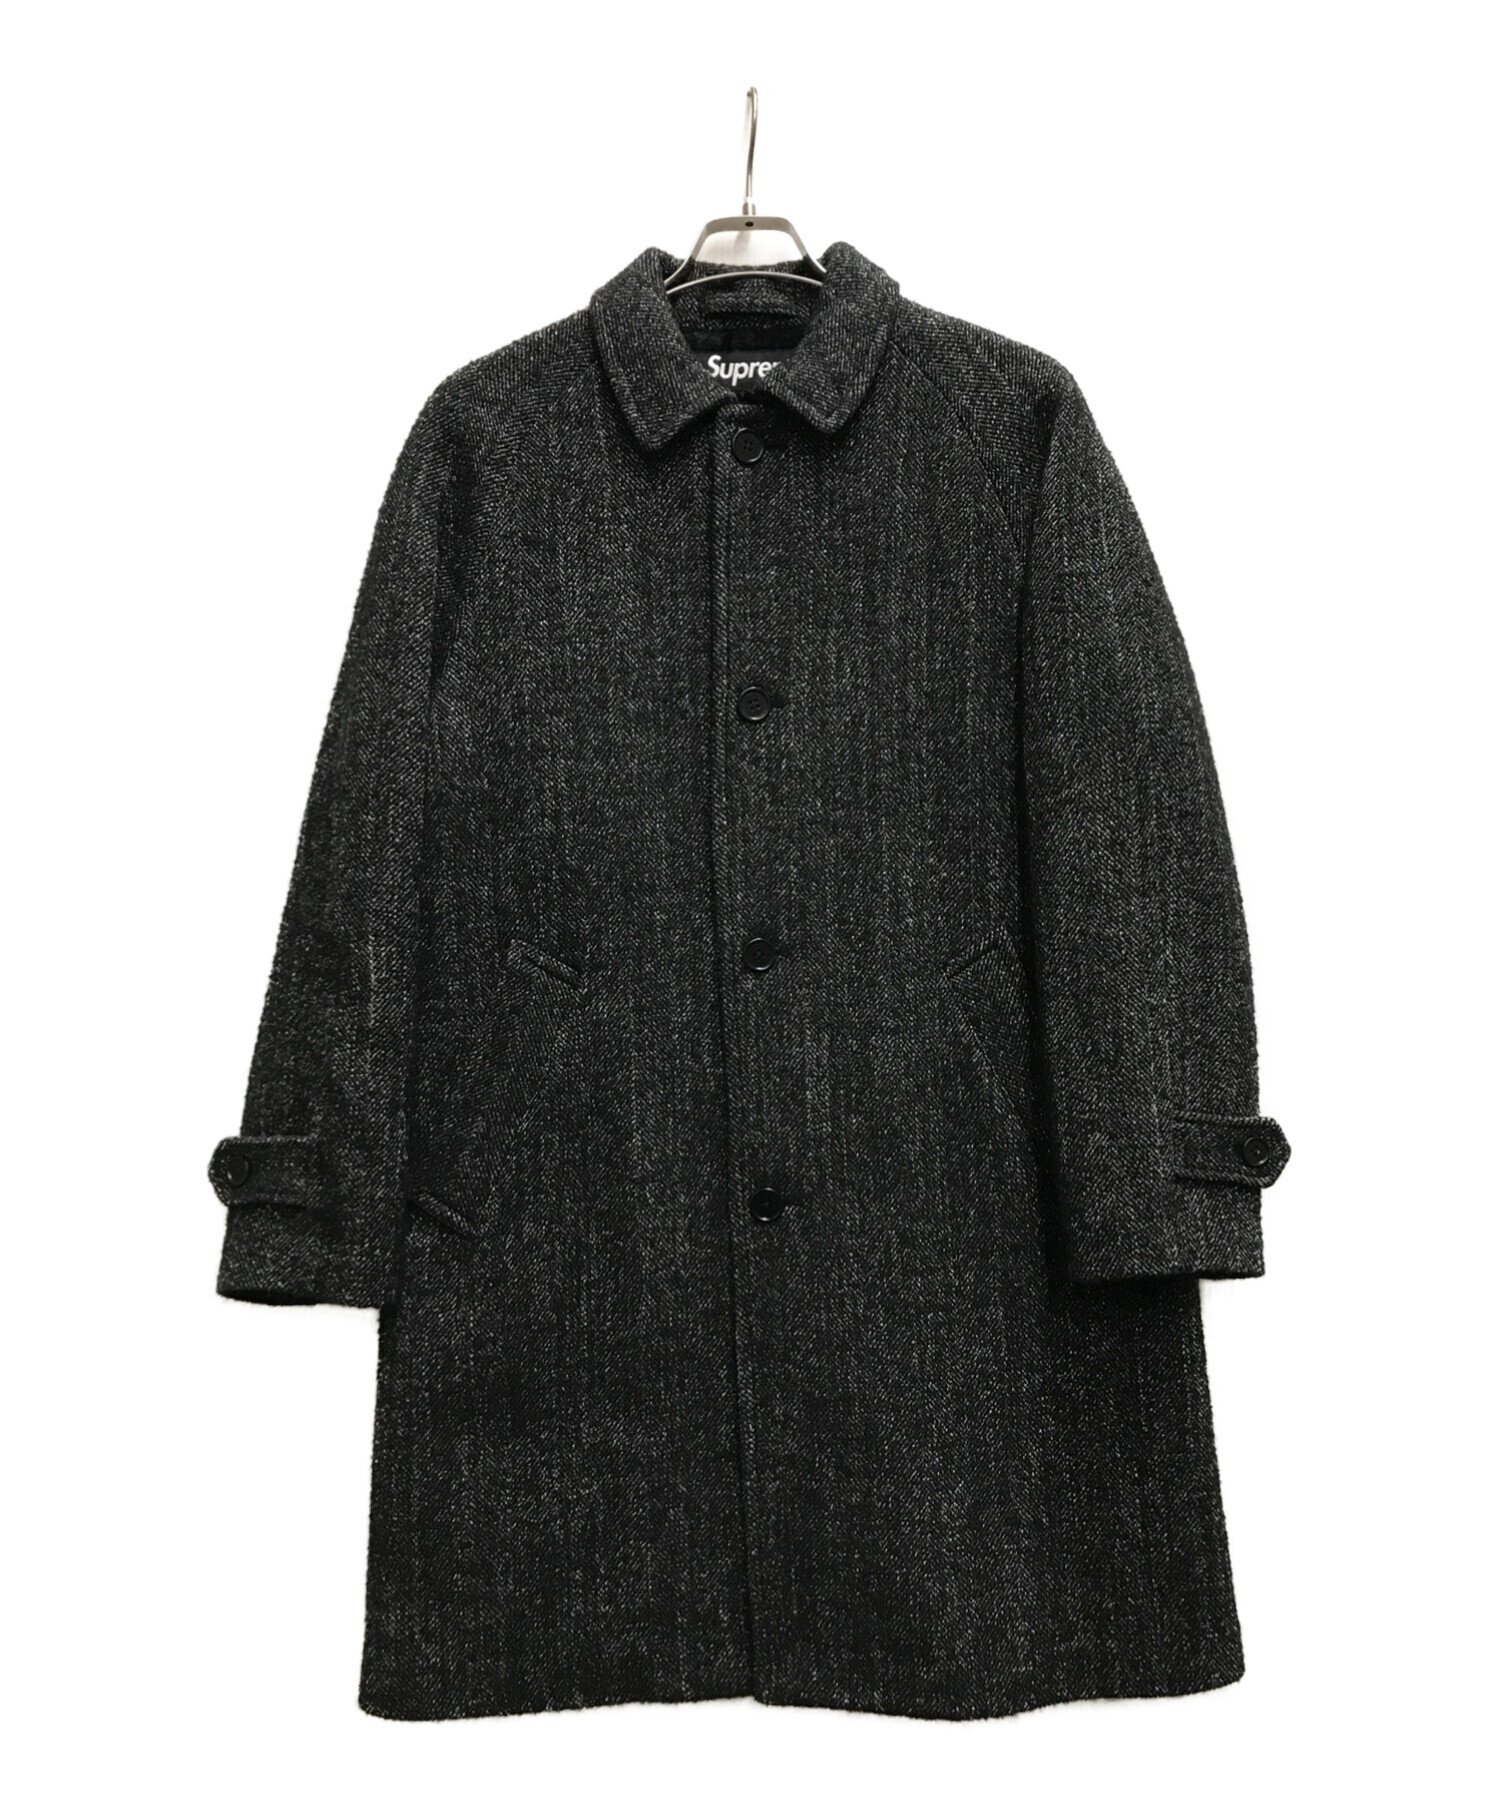 31,200円FW18 Supreme Wool Trench Coat コート